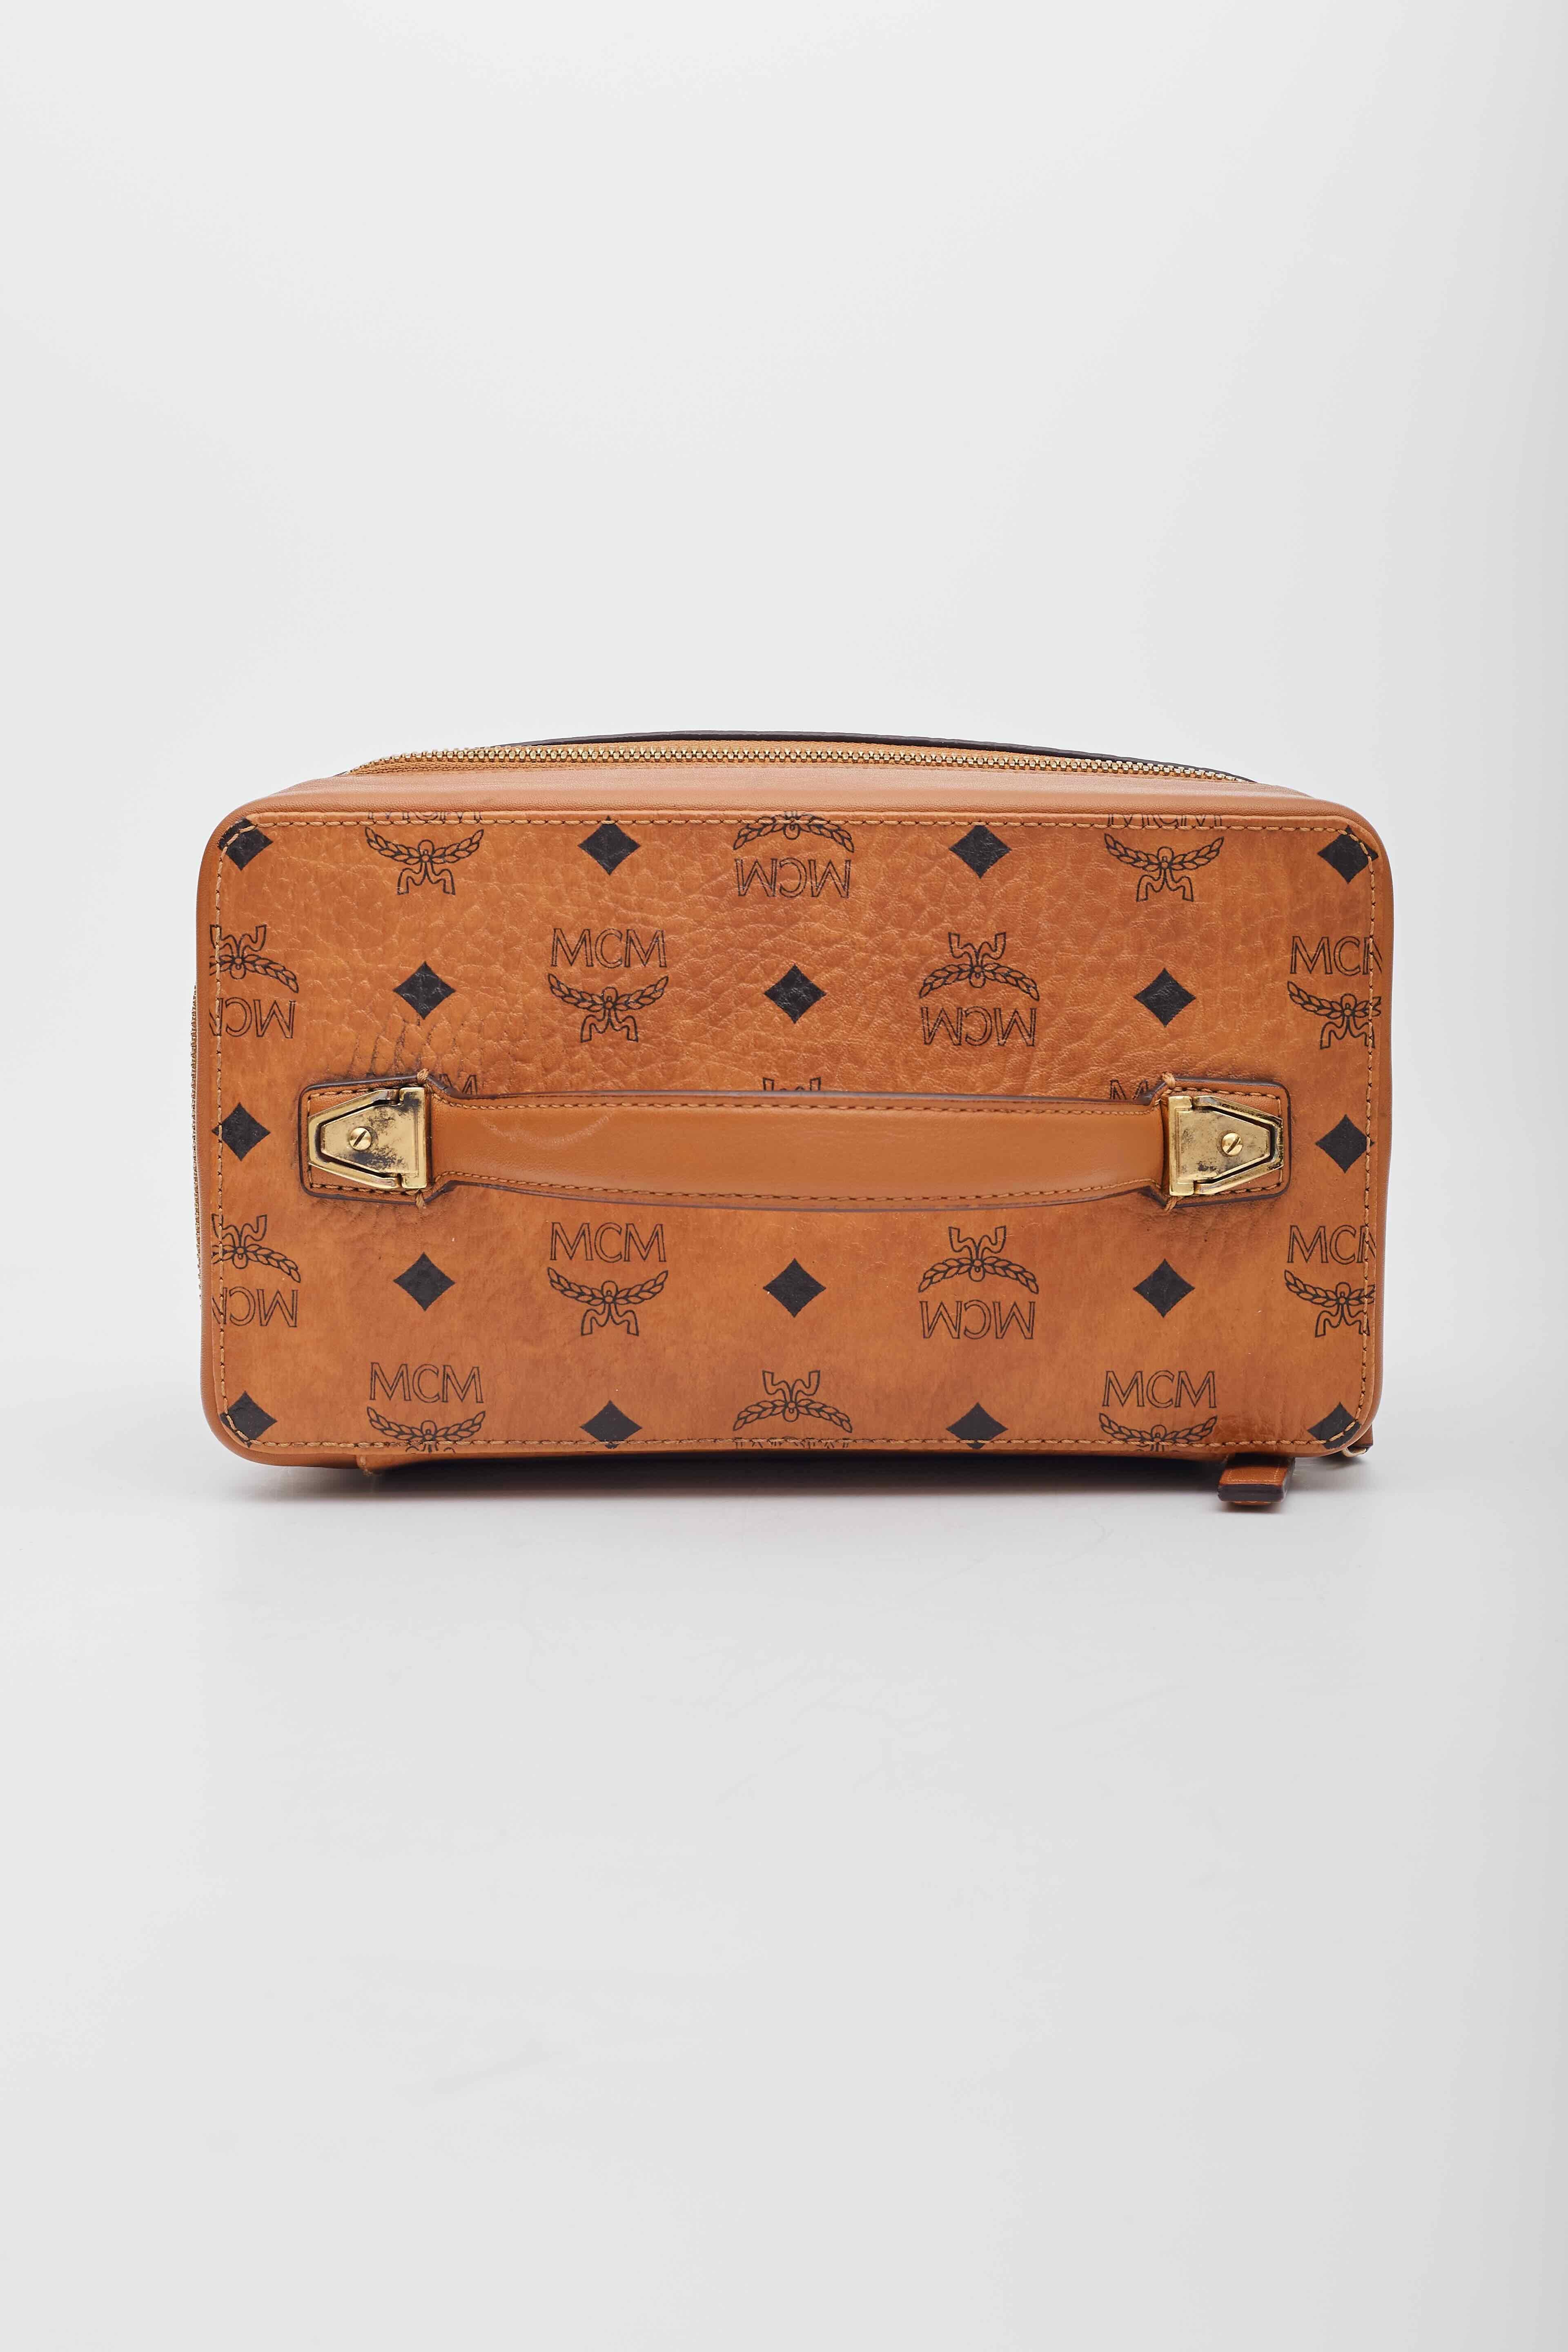 MCM Visetos Vanity Case Cognac Canvas Top Handle Bag For Sale 3